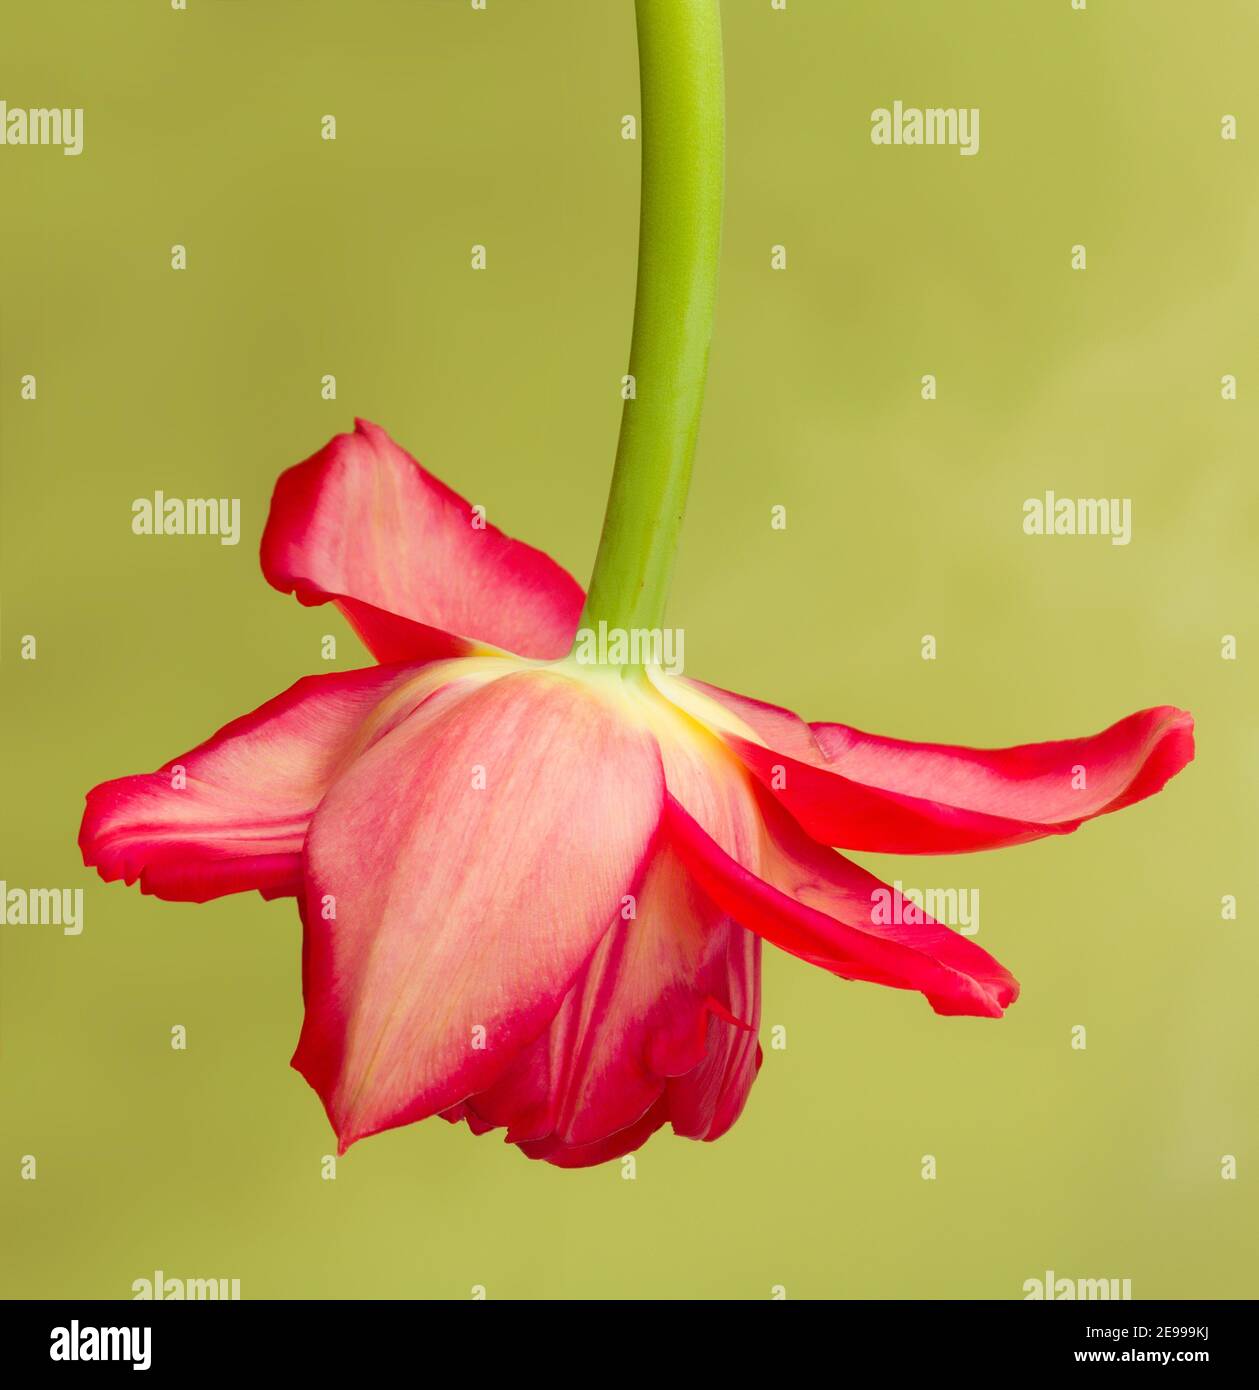 Tulipe rouge suspendue à l'envers - l'image peut être utilisée pour photoshop un bébé dans lui Banque D'Images